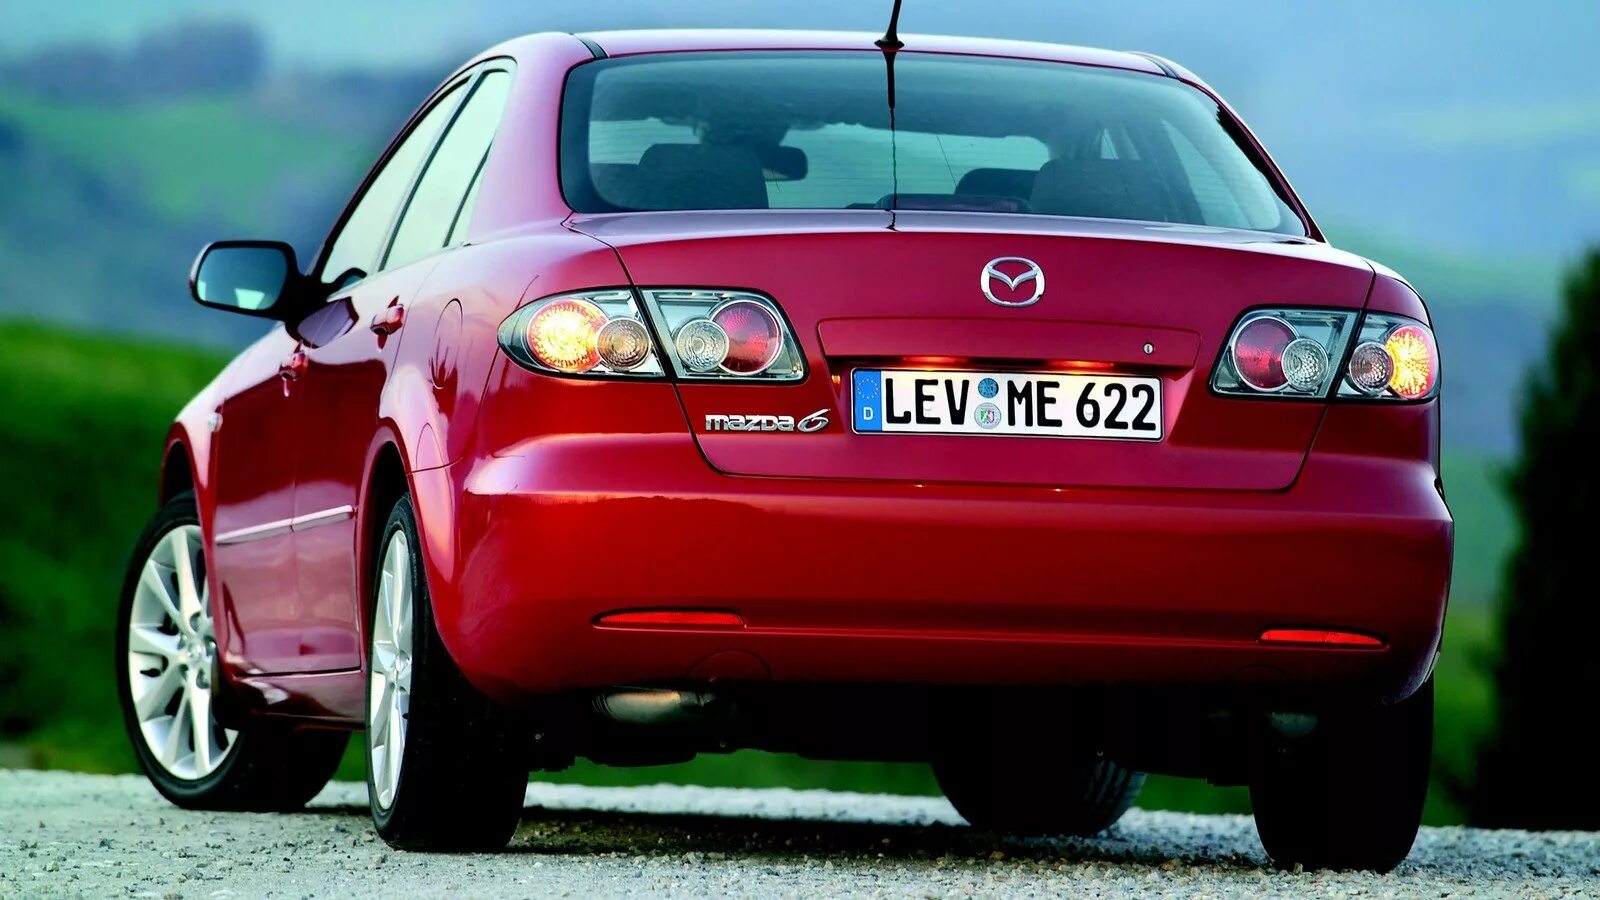 Mazda 6 gg. Mazda 6 седан 2005. Mazda 6 gg 2005. Mazda 6 gg (2002-2007). Mazda gg 2007